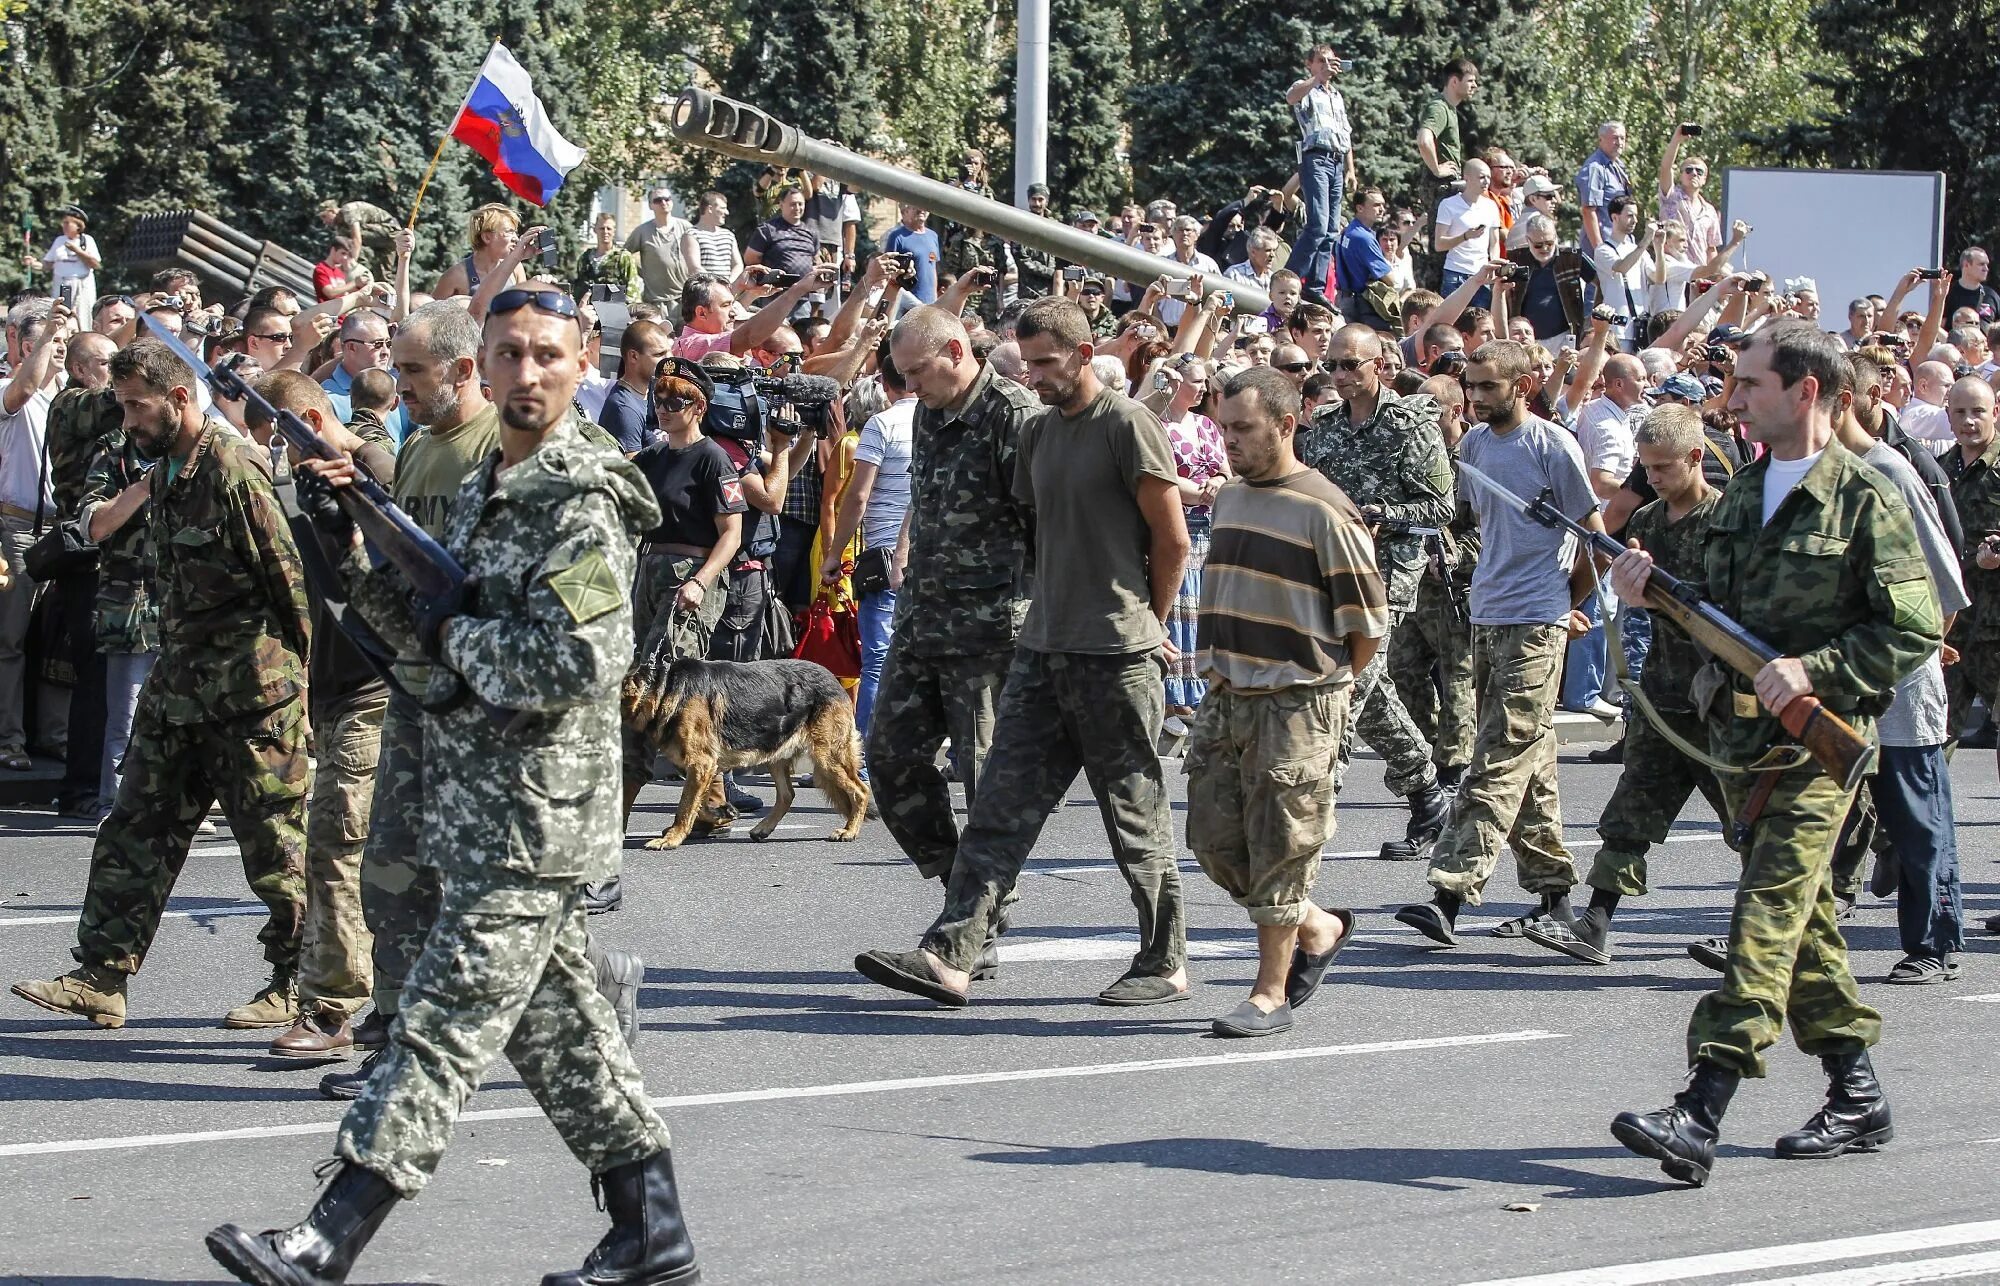 Донецк 24 августа 2014 парад пленных. Парад пленных в Донецке. Парад пленных в Донецке в 14 году. Парад пленных украинцев.